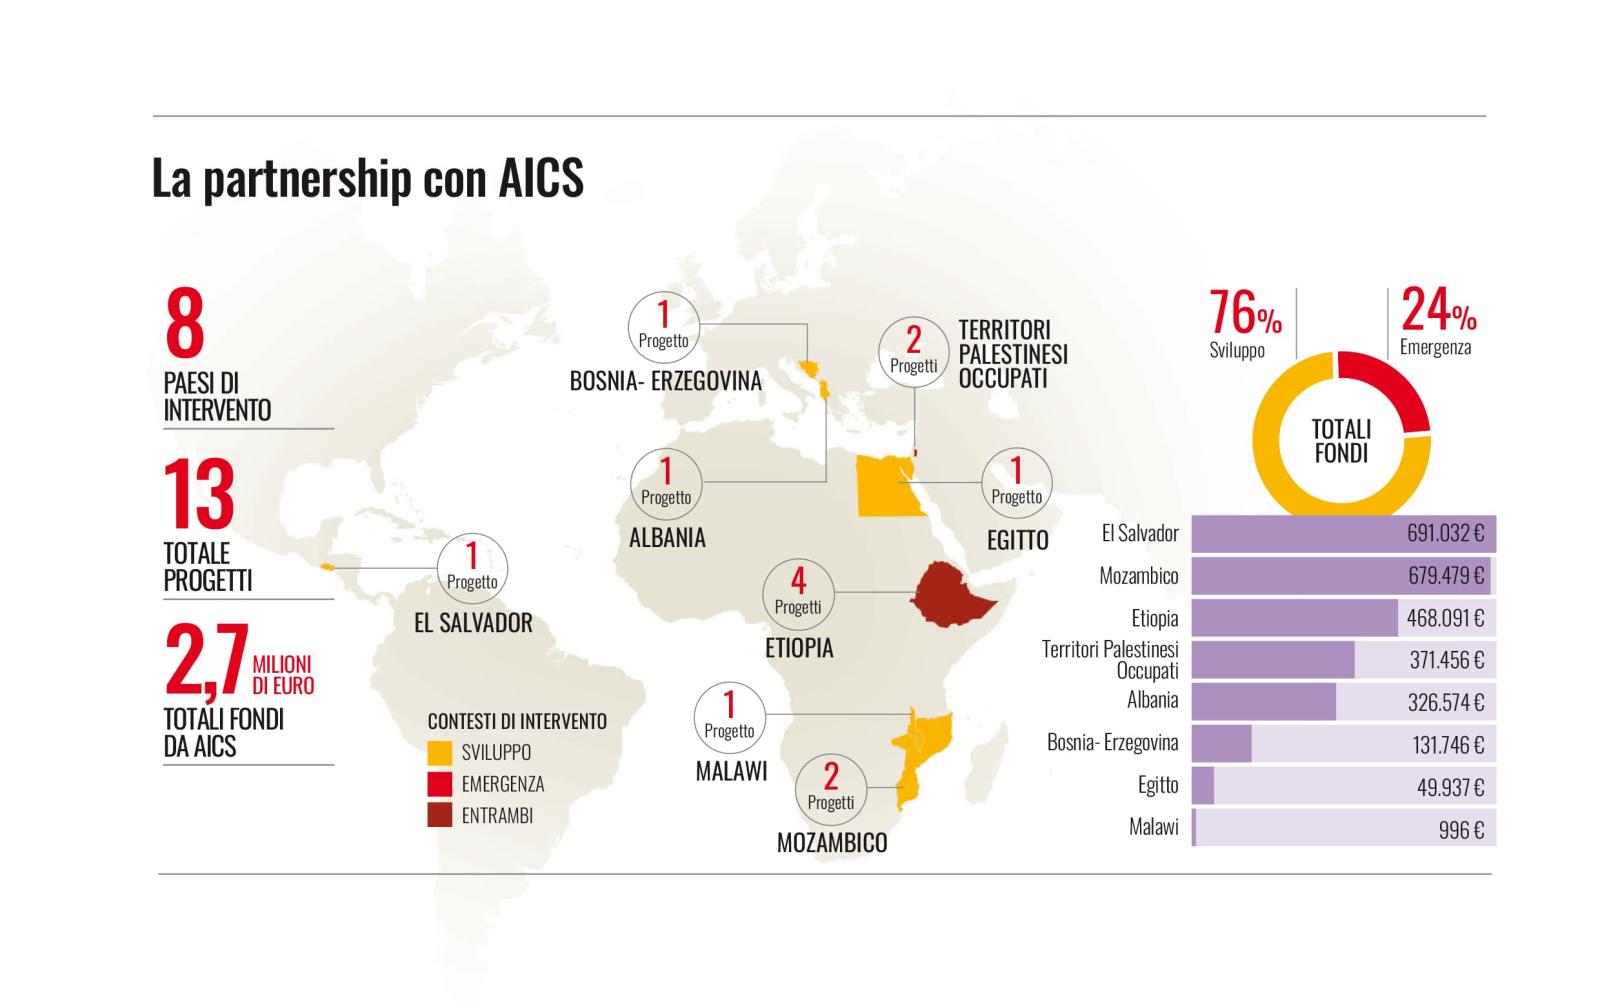 Infografica descrittiva sui progetti in partnership con AICS